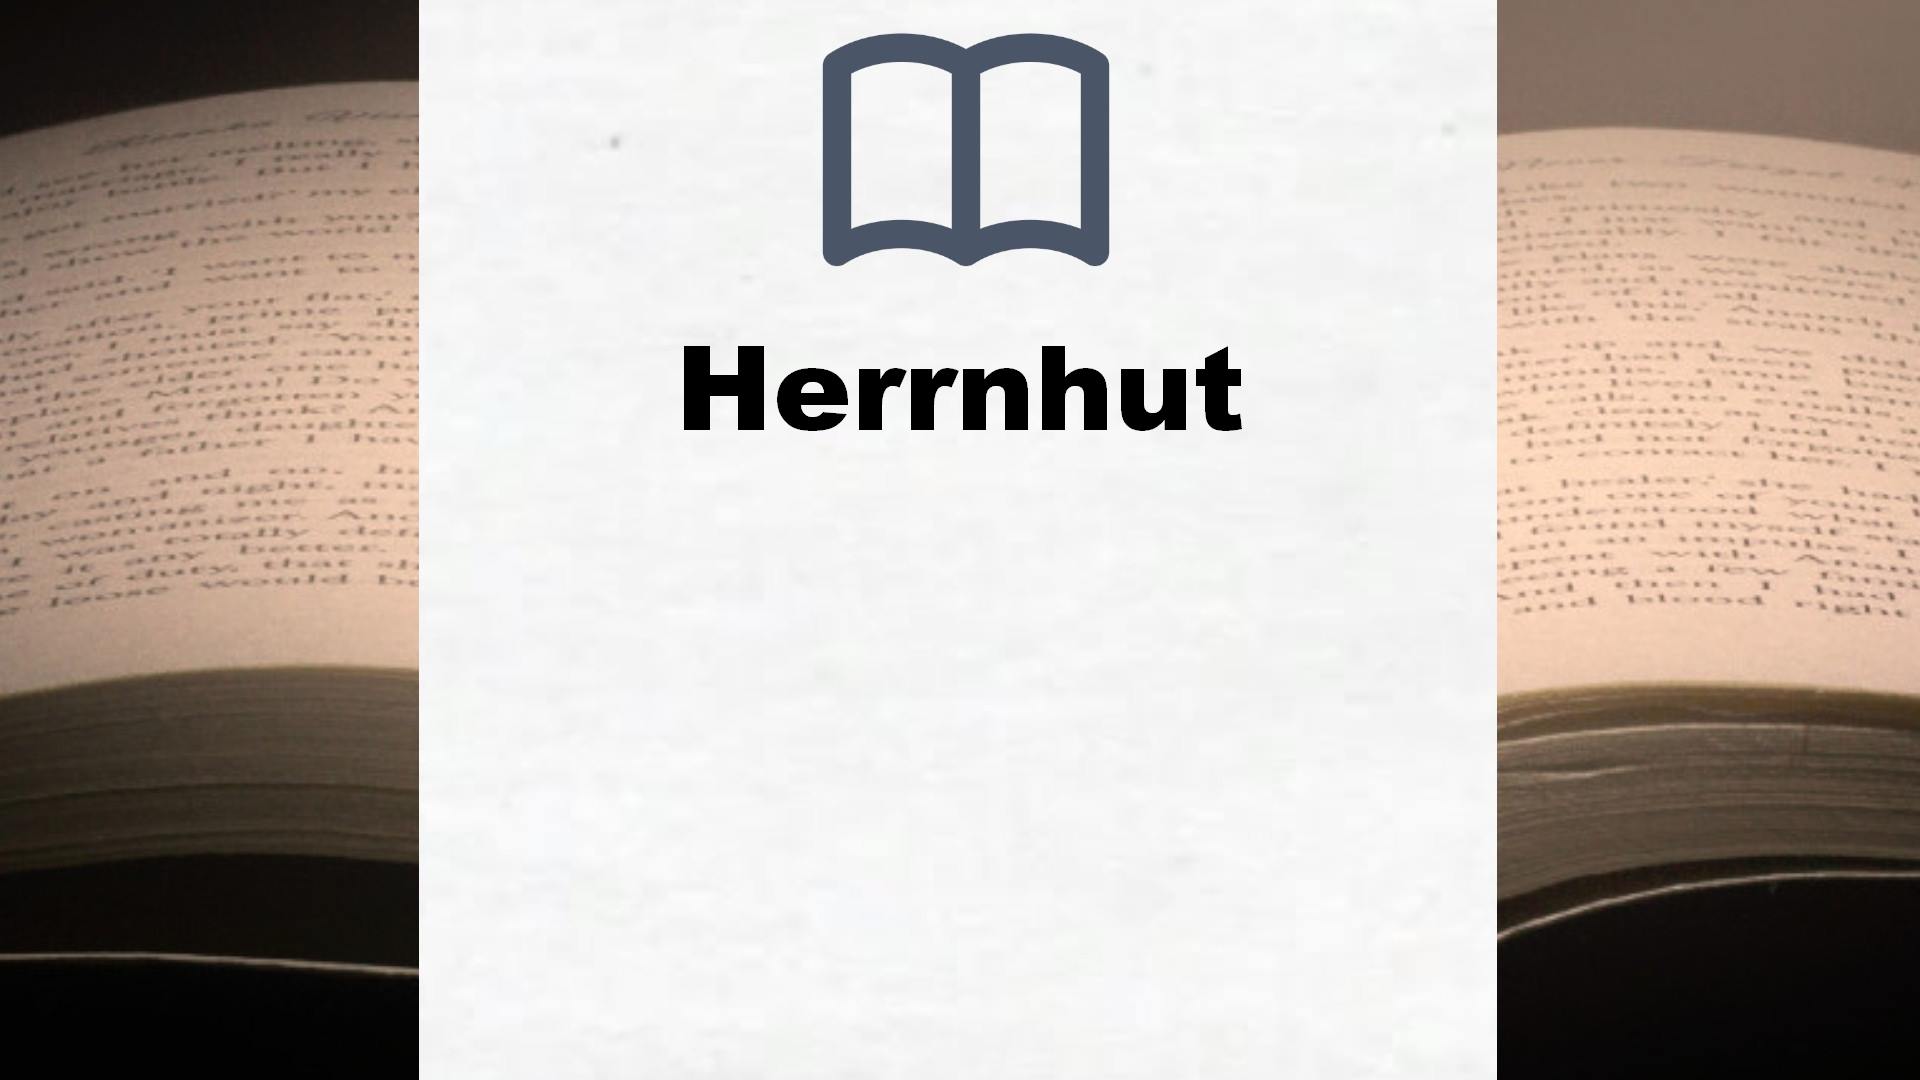 Bücher über Herrnhut